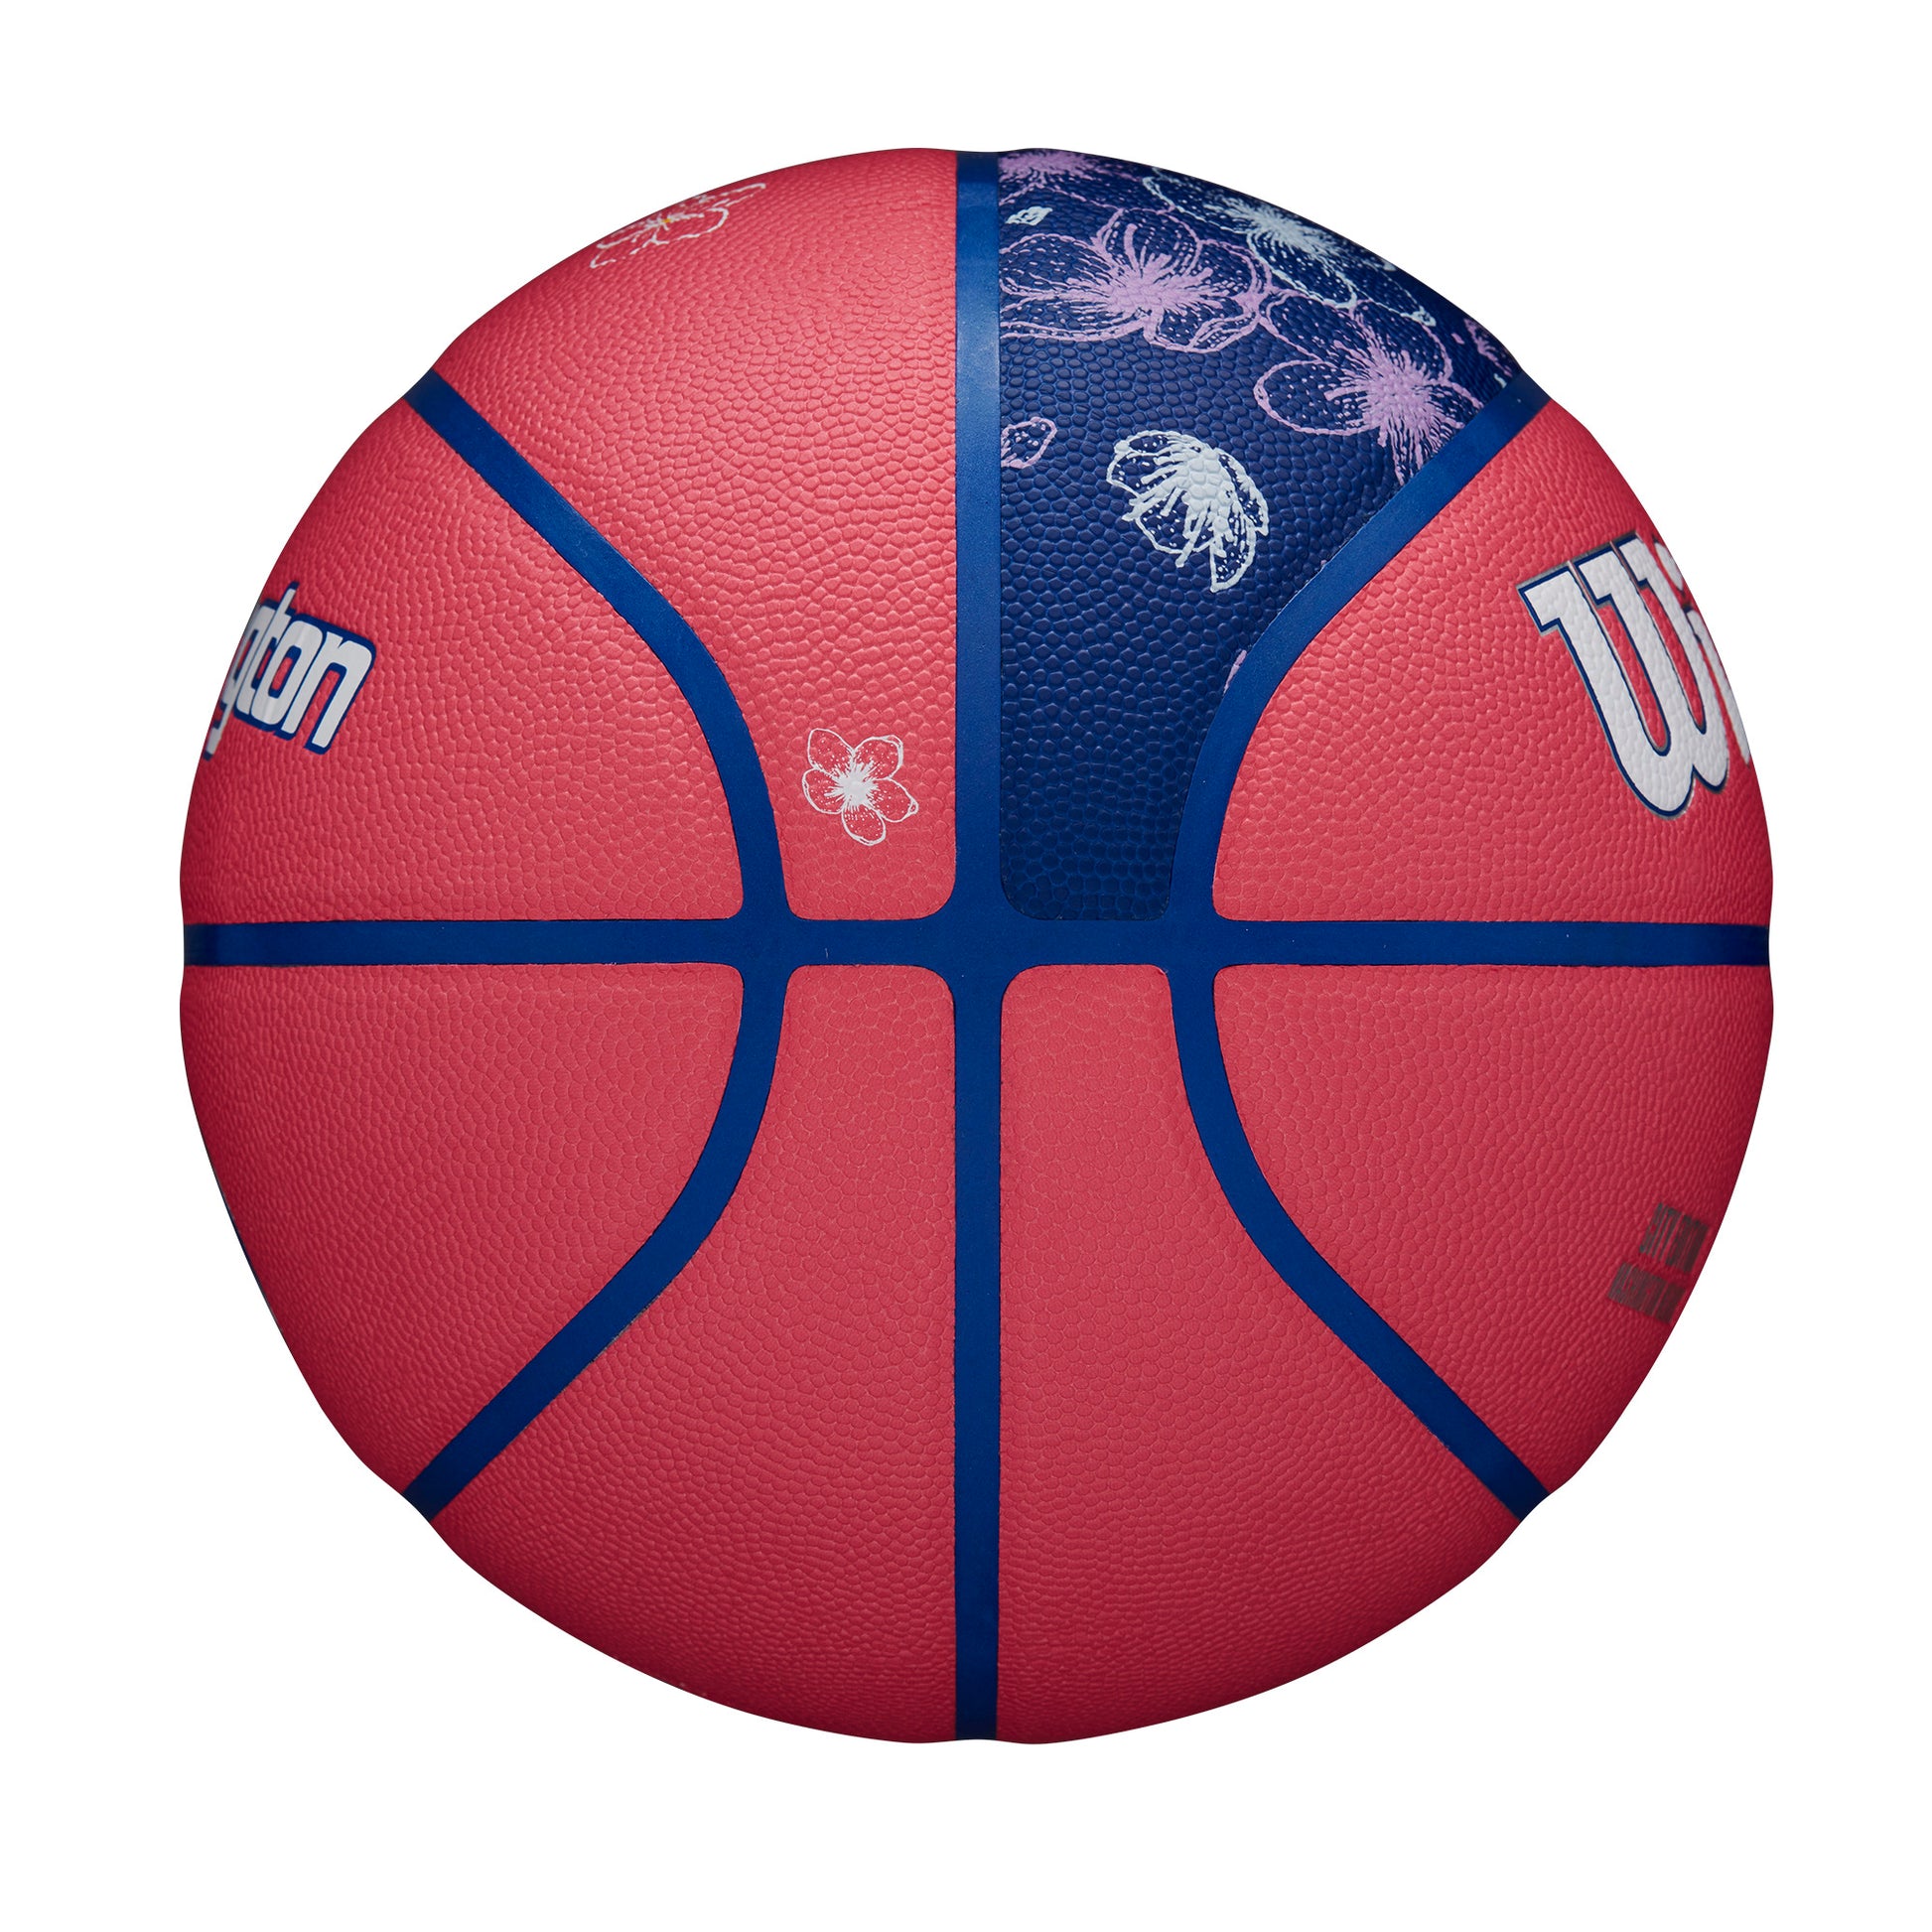 Wilson NBA TEAM CITY COLLECTOR BASKETBALL WASHINGTON WIZARDS Red WZ4016430XB